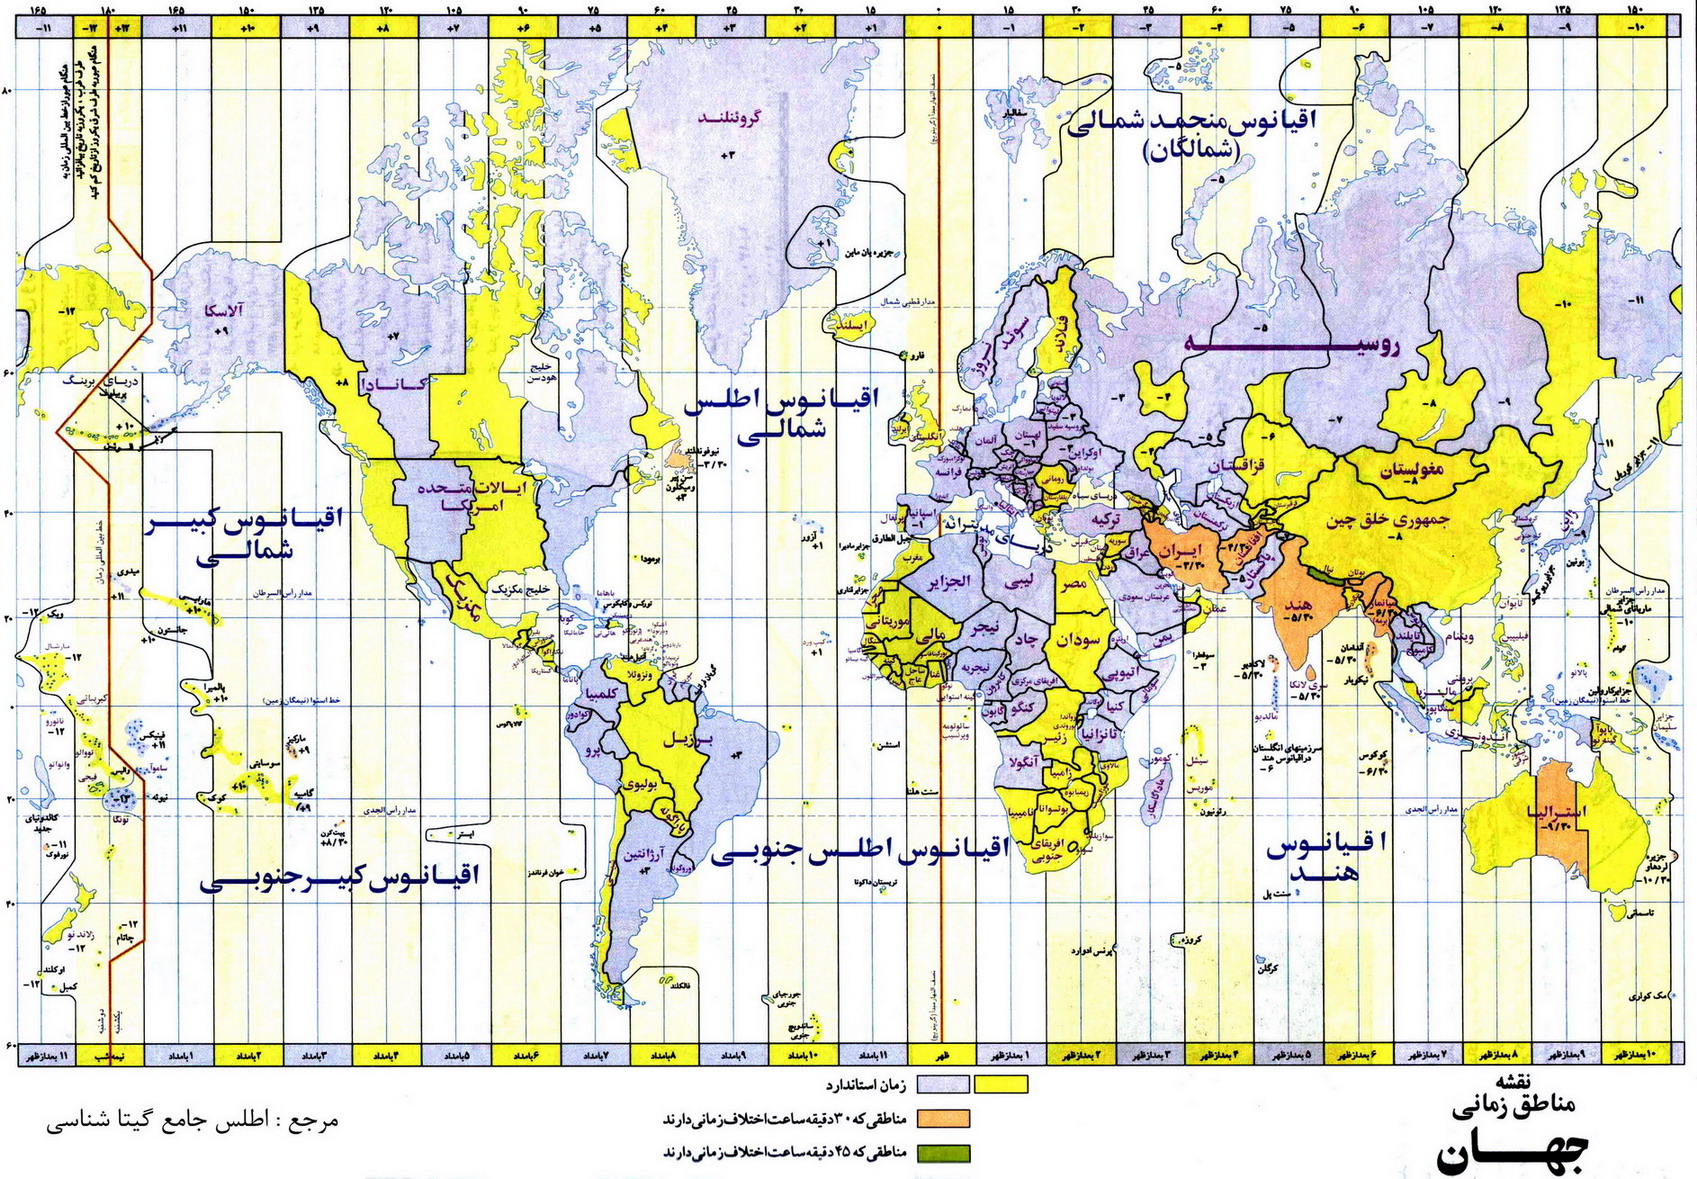 زیباترین نقشه جهان فارسی همراه با دقیق ترین نقشه ساعت ومناطق زمانی و فارسی